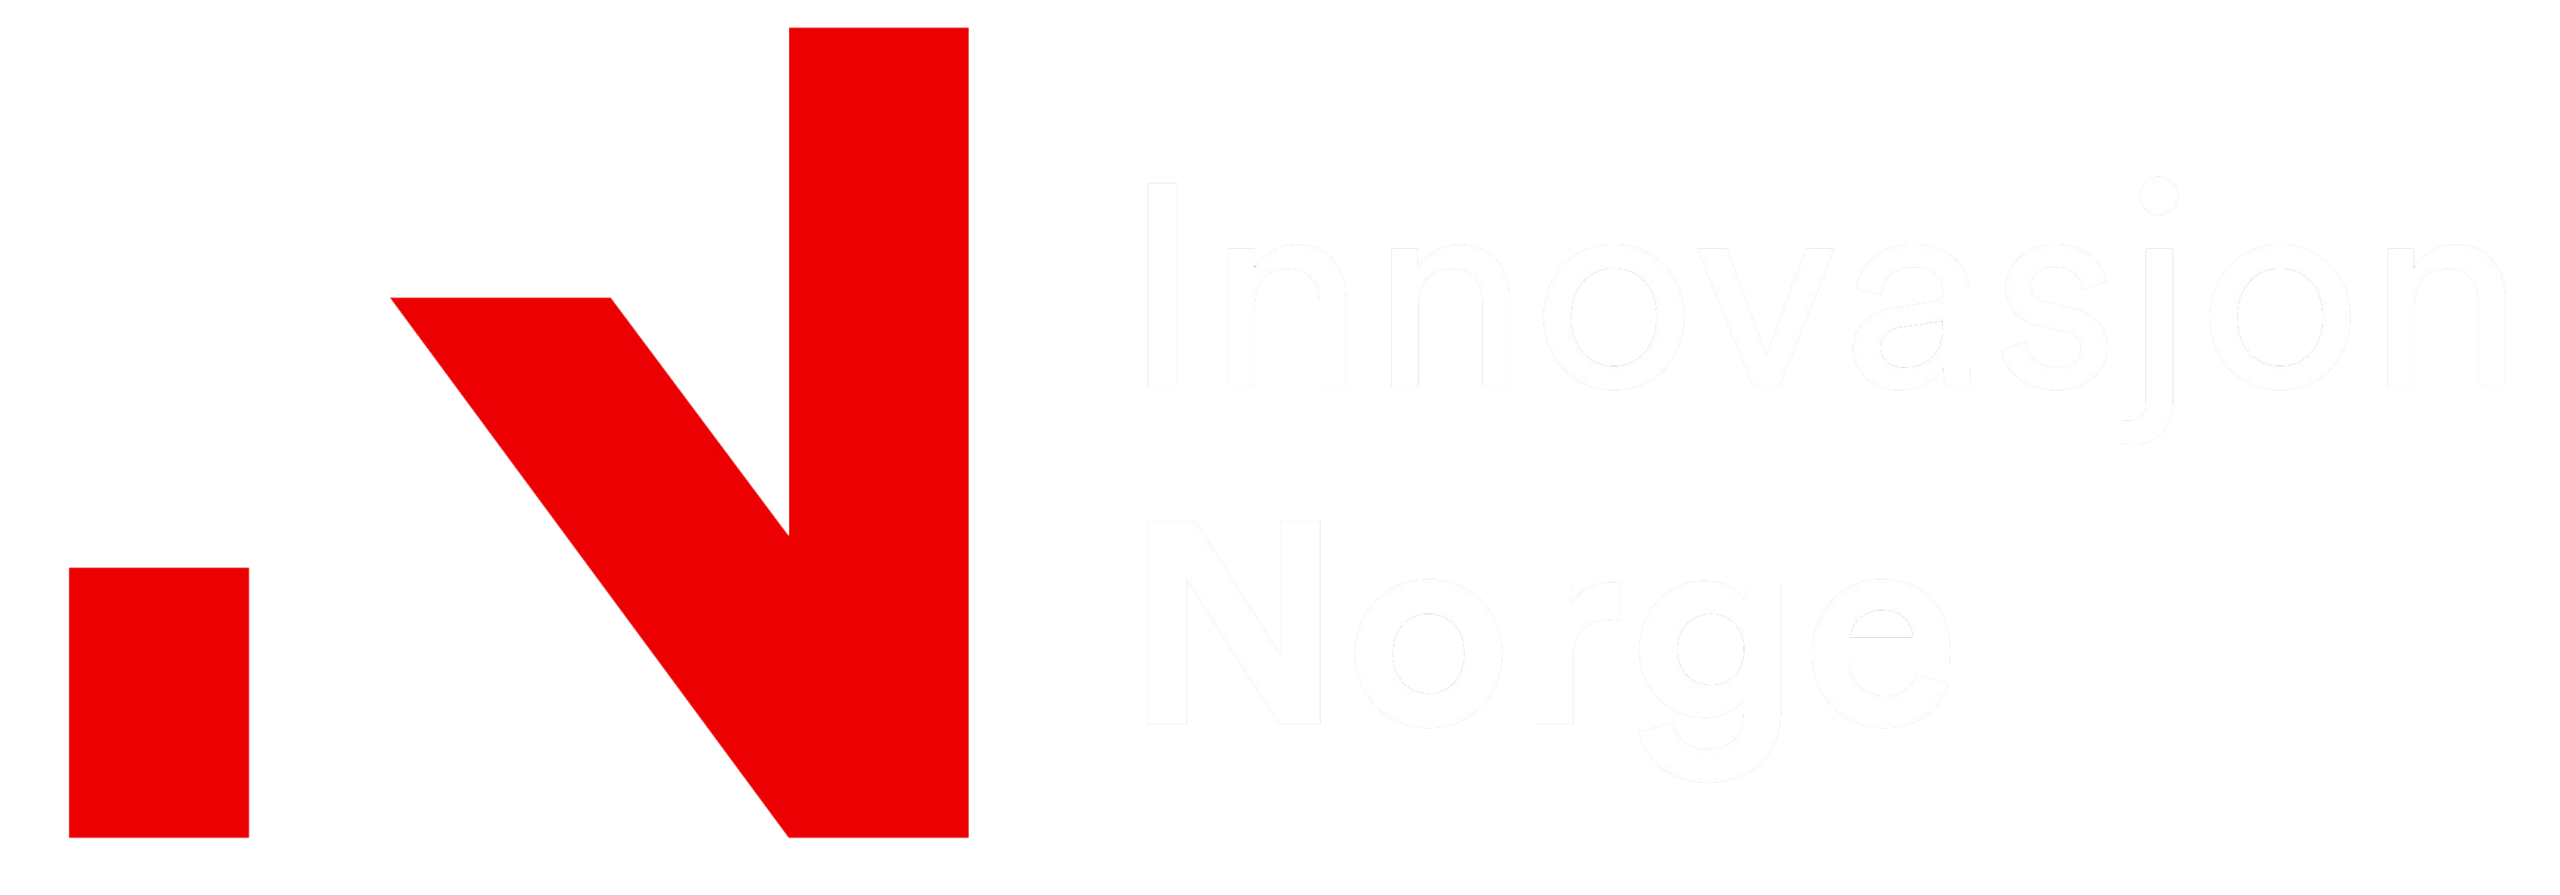 Med støtte fra Innovasjon Norge